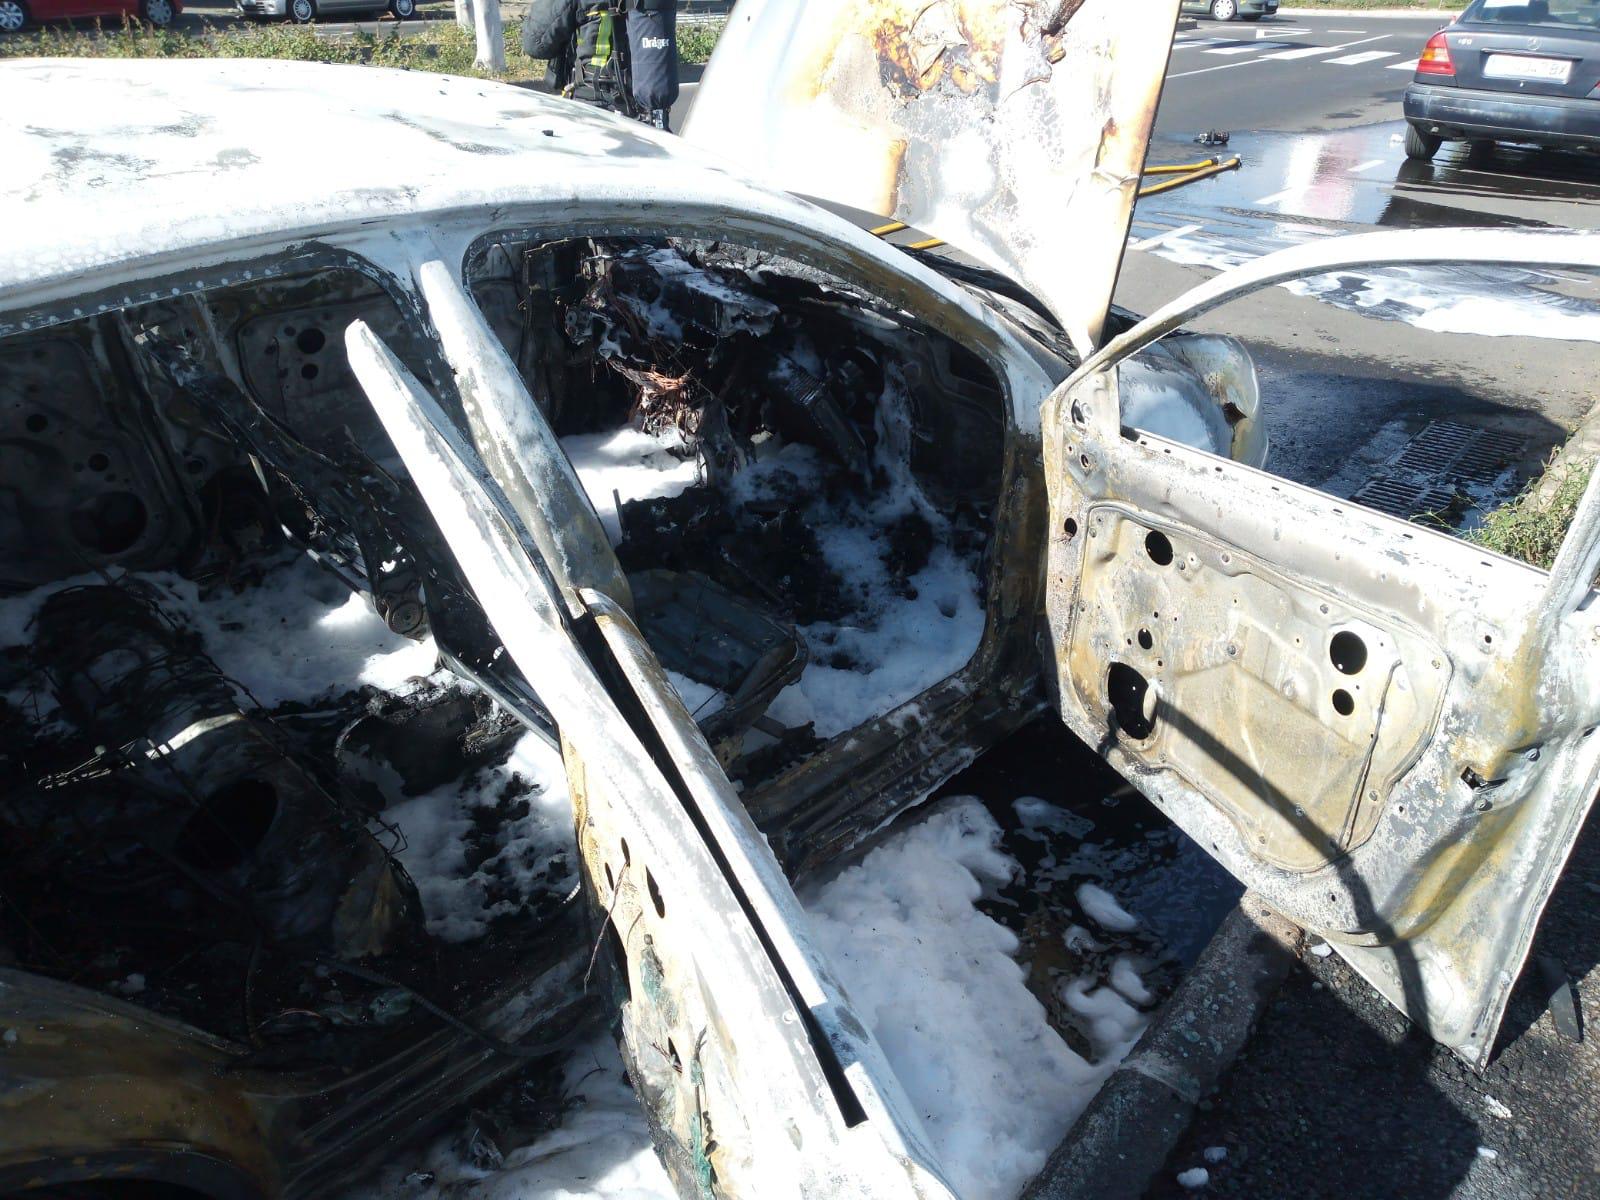 Imagen secundaria 1 - Arde un vehículo en Vecindario